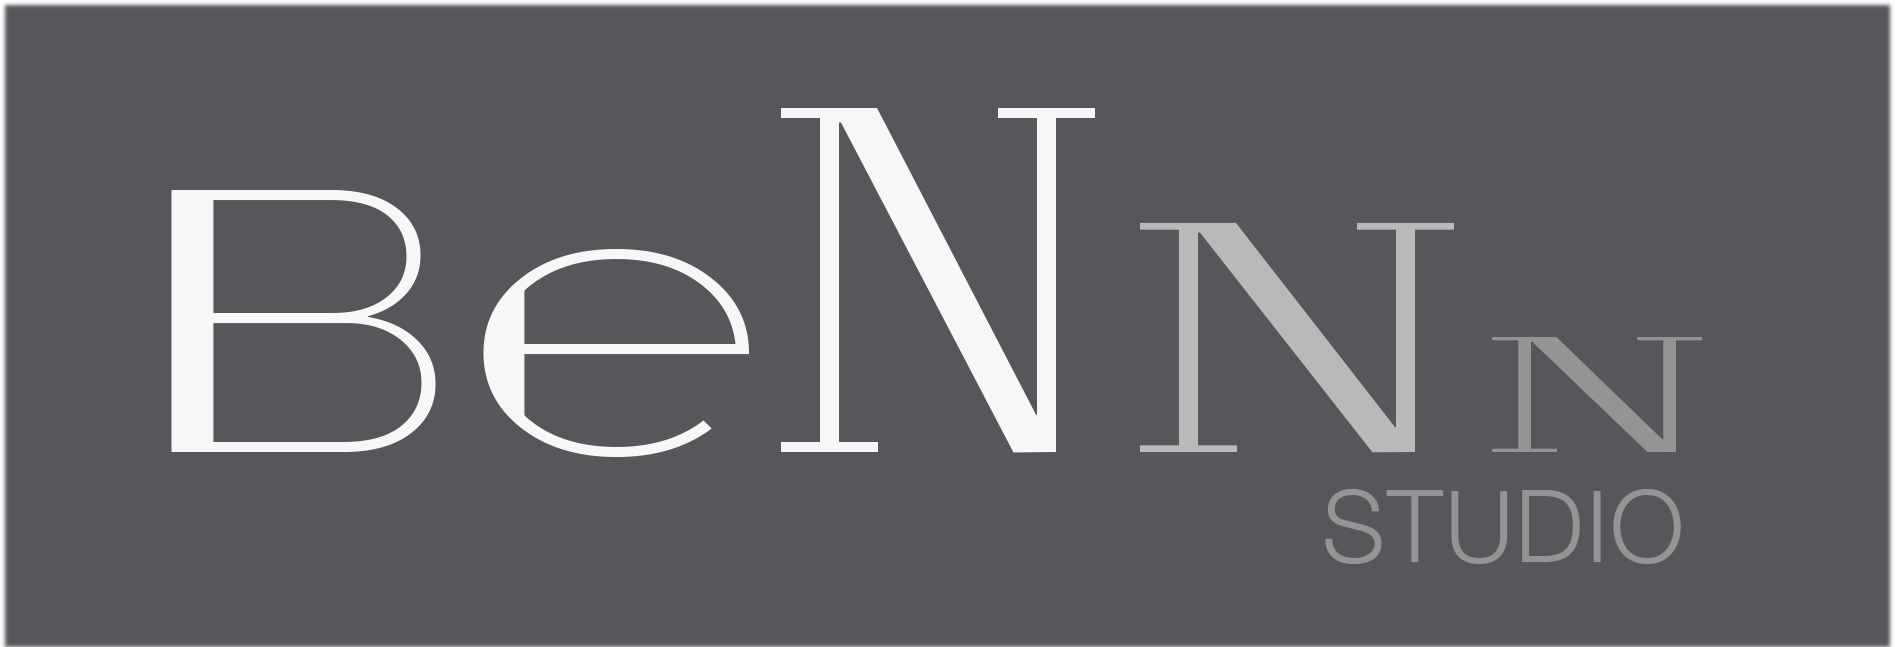 логотип студии BeNNN-studio